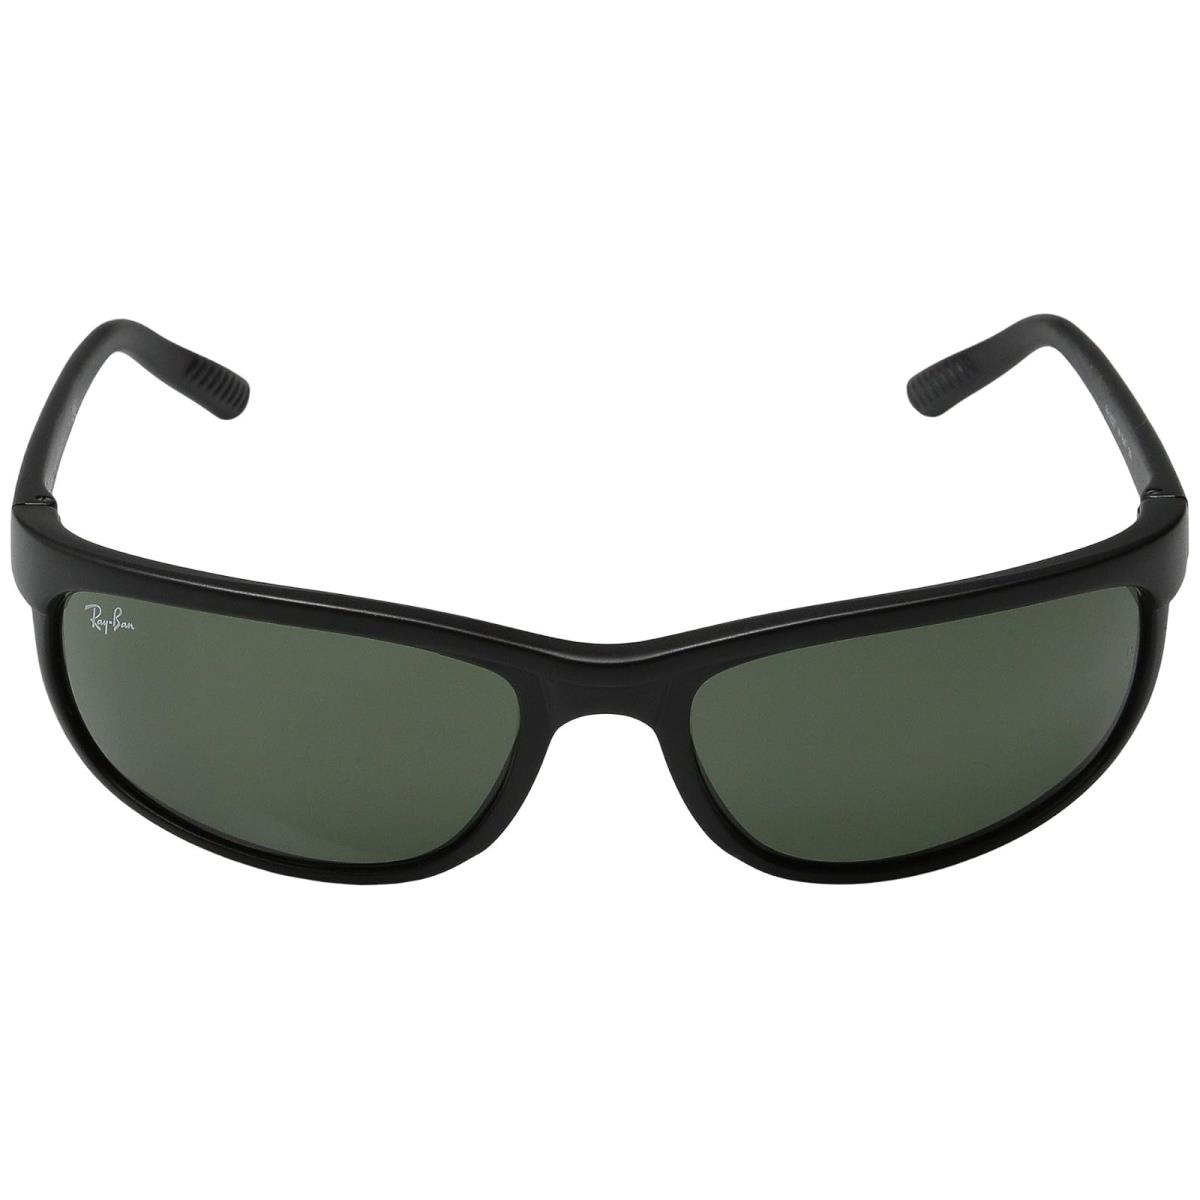 Unisex Sunglasses Ray-ban RB2027 Predator 2 - Matte Black/G-15xlt Lens, Frame: Multicolor